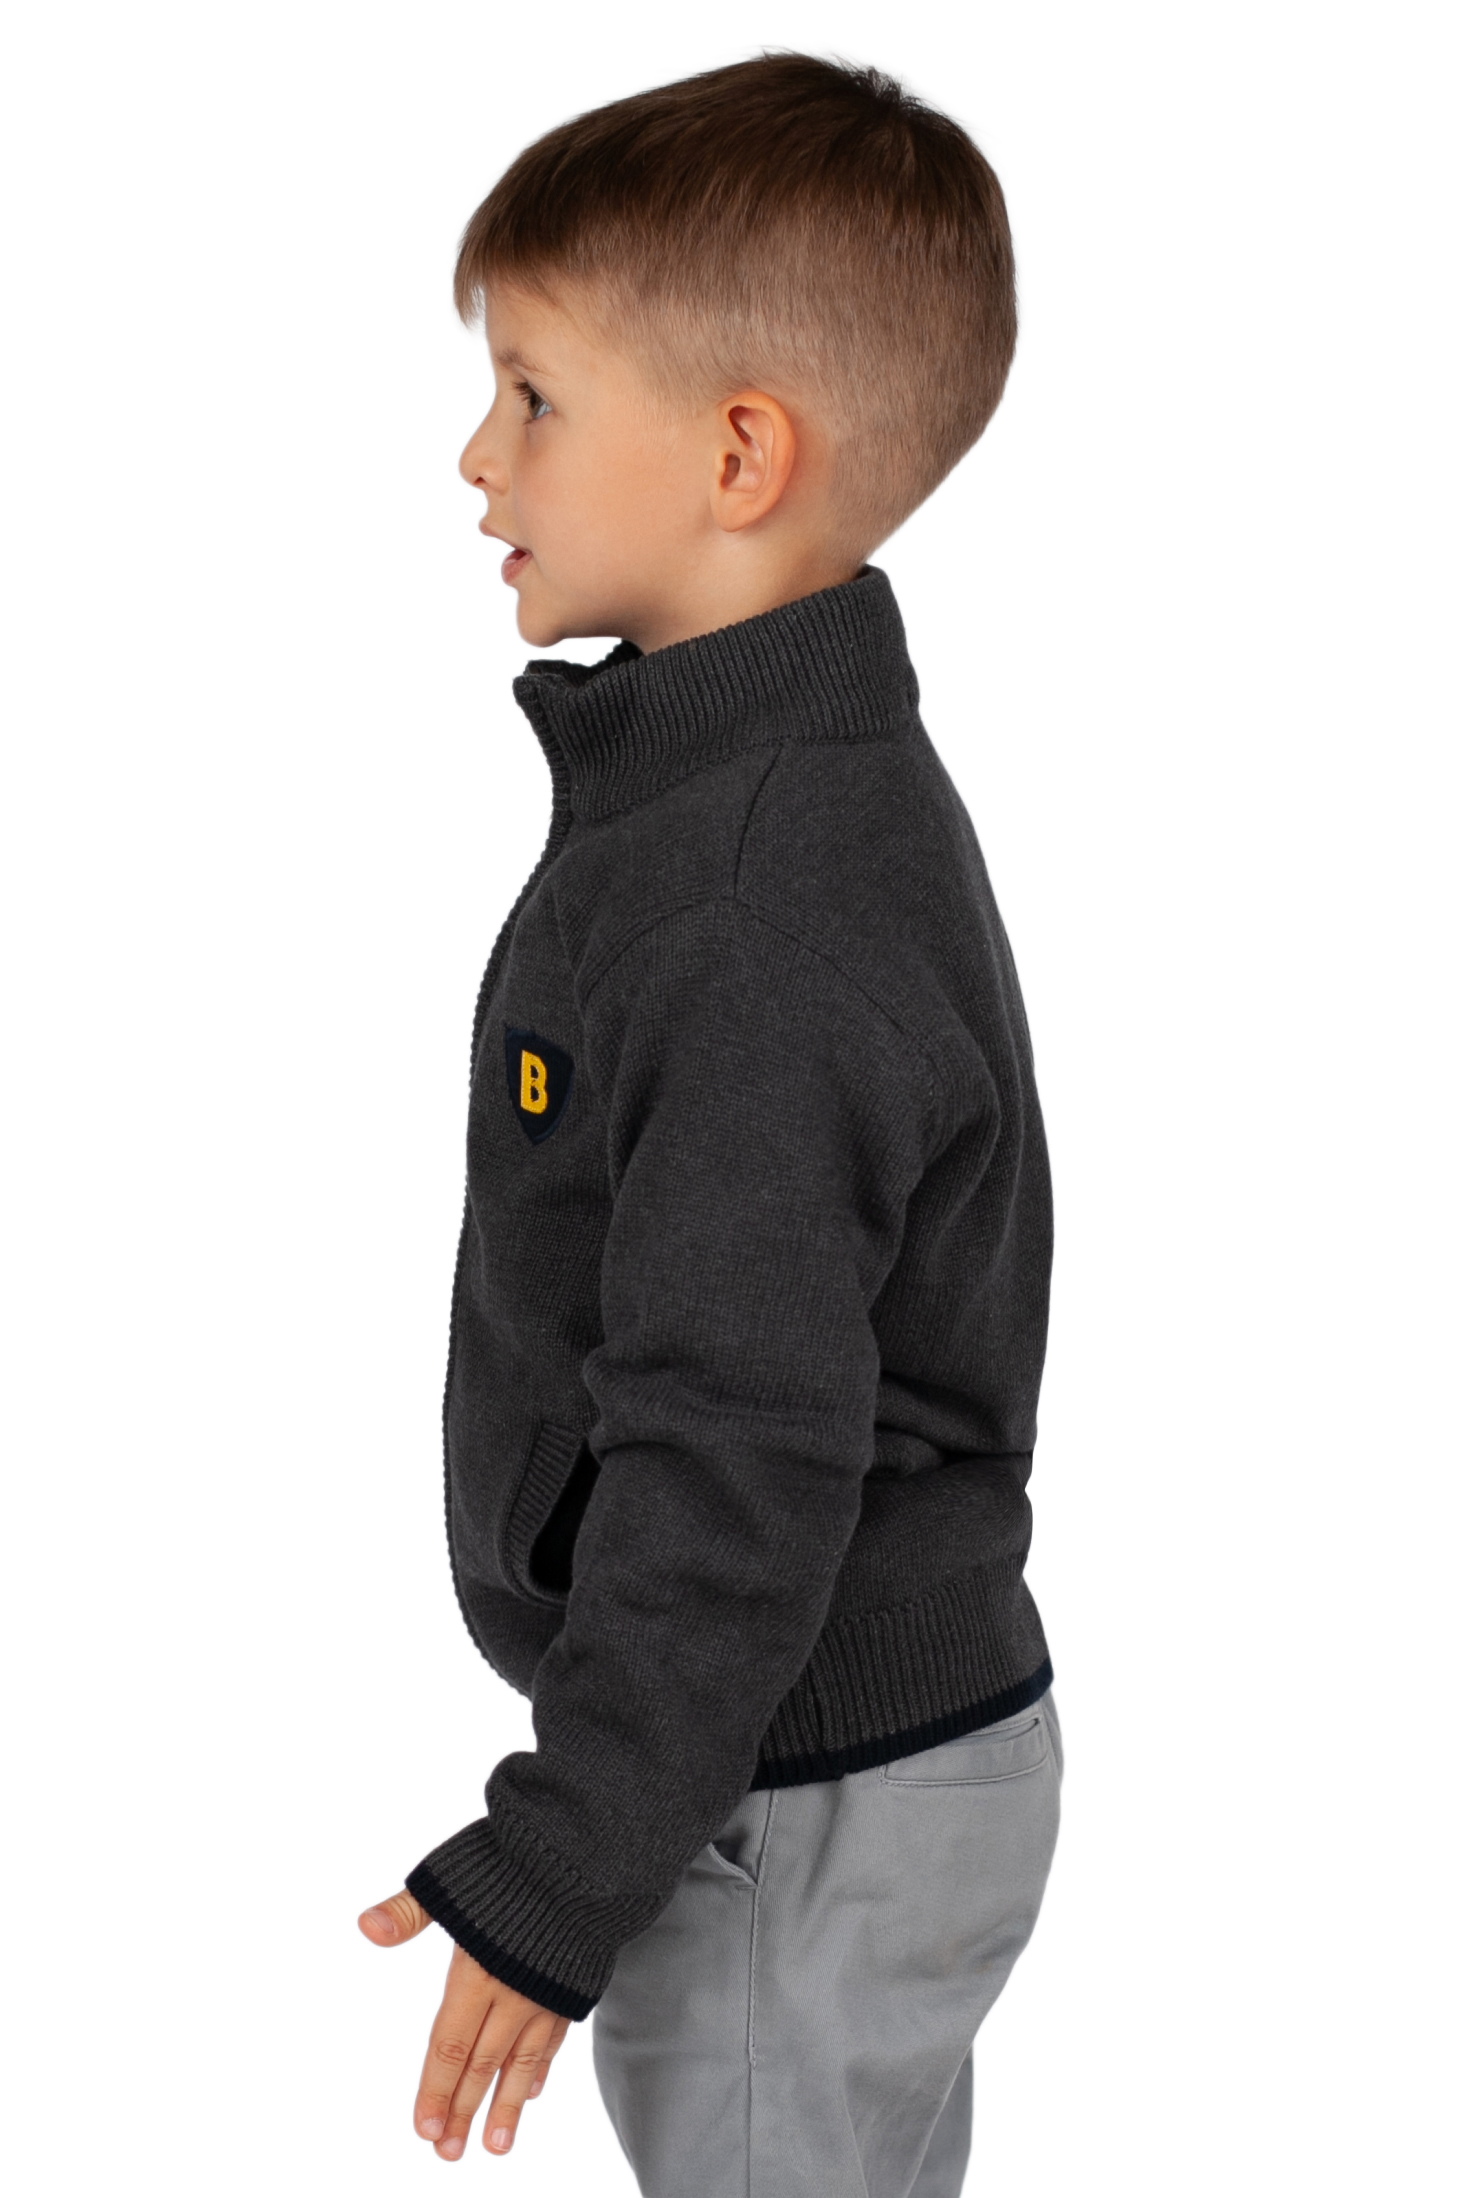 Кардиган для мальчика (арт. baon BK648502), размер 122-128, цвет grey melange#серый Кардиган для мальчика (арт. baon BK648502) - фото 2